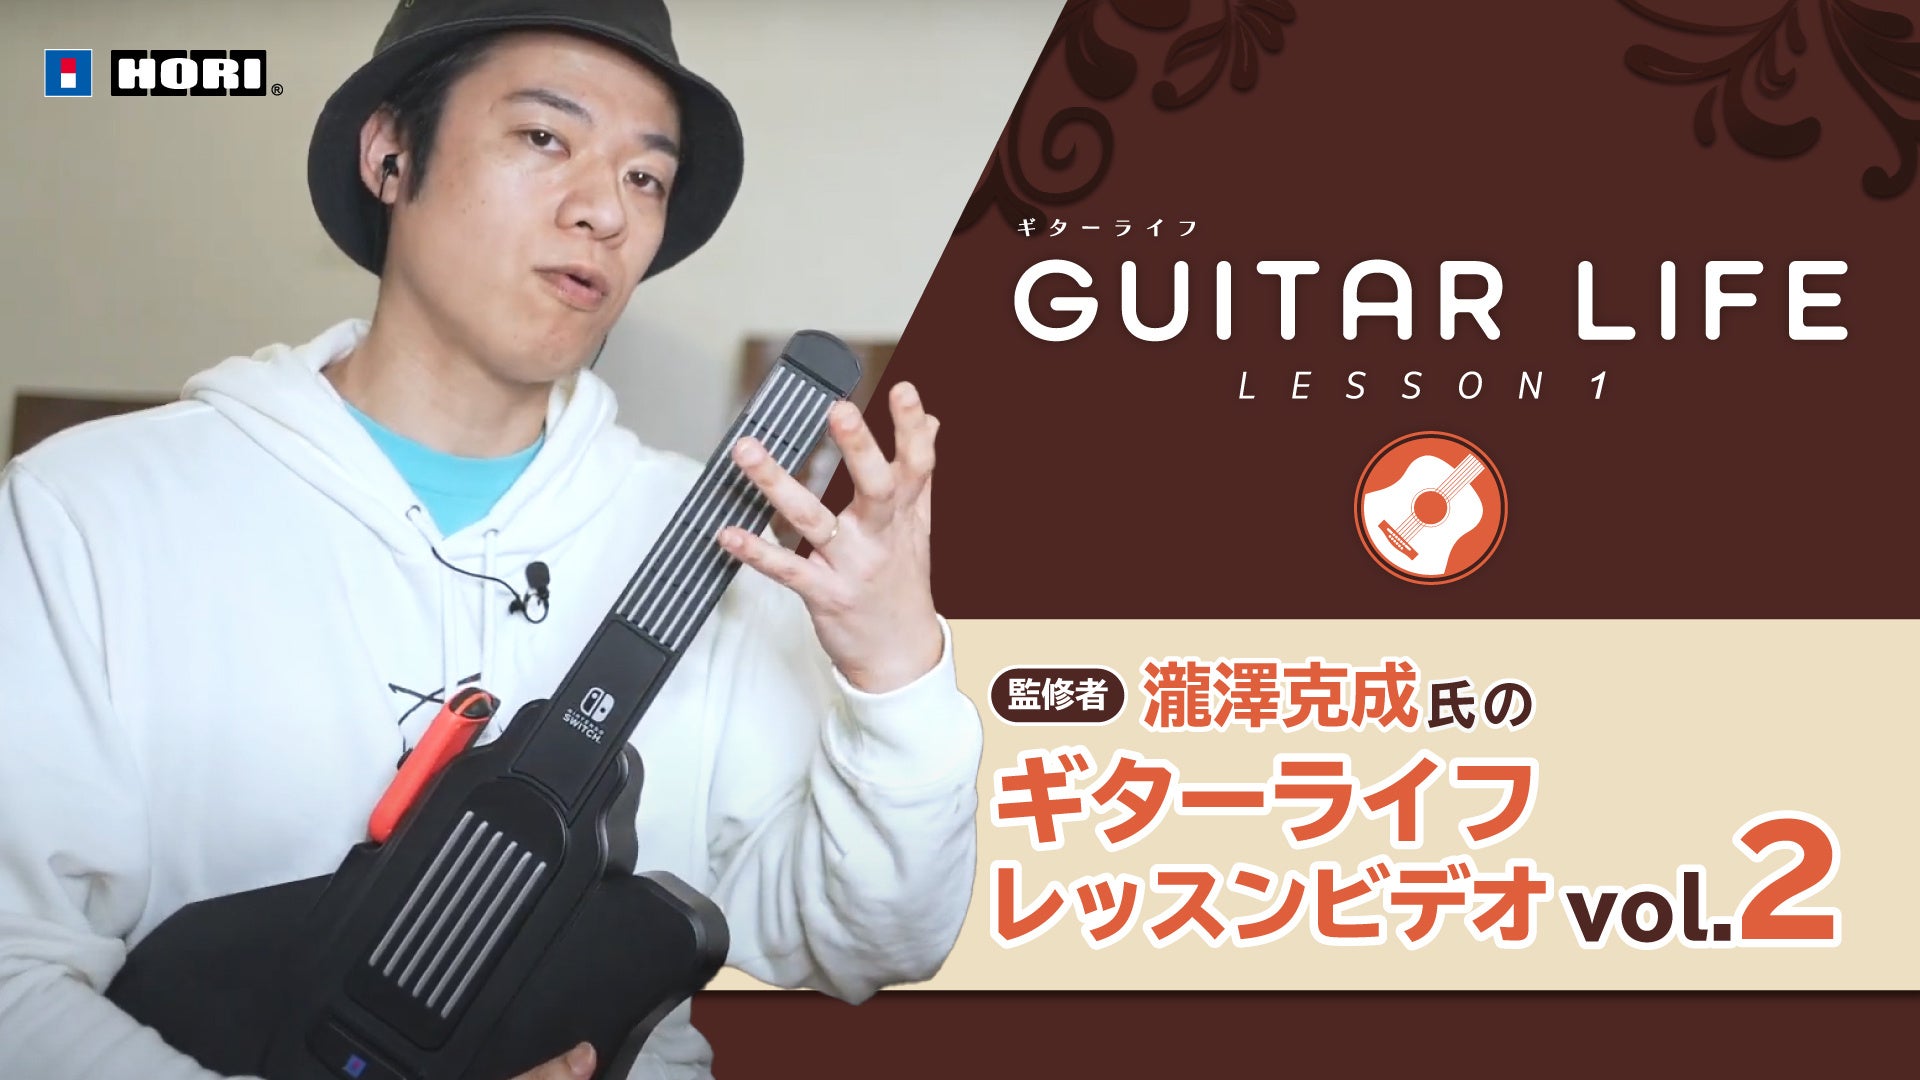 Nintendo Switch専用ソフト「GUITAR LIFE -LESSON1-」監修者・瀧澤克成氏によるギターライフレッスンビデオVol.2を公開！！